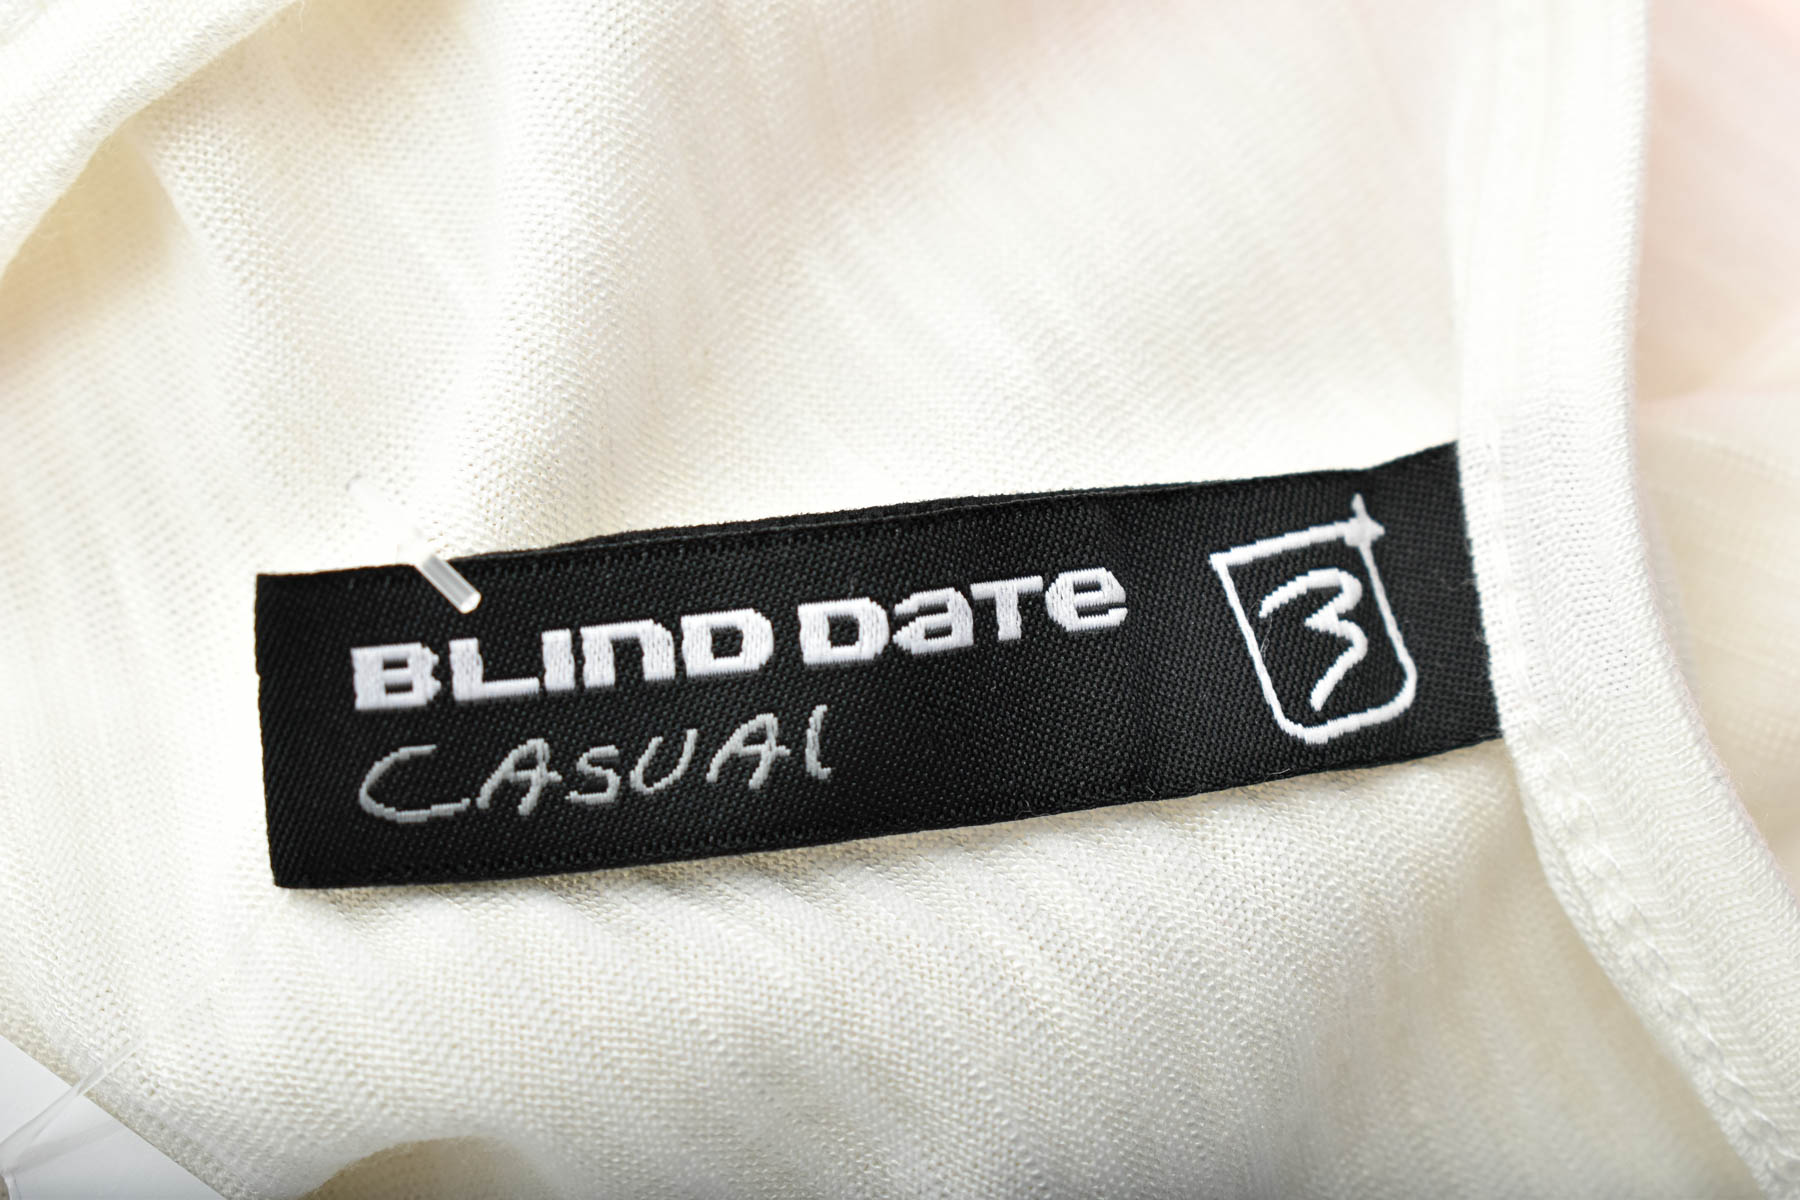 Γυναικεία μπλούζα - Blind Date - 2